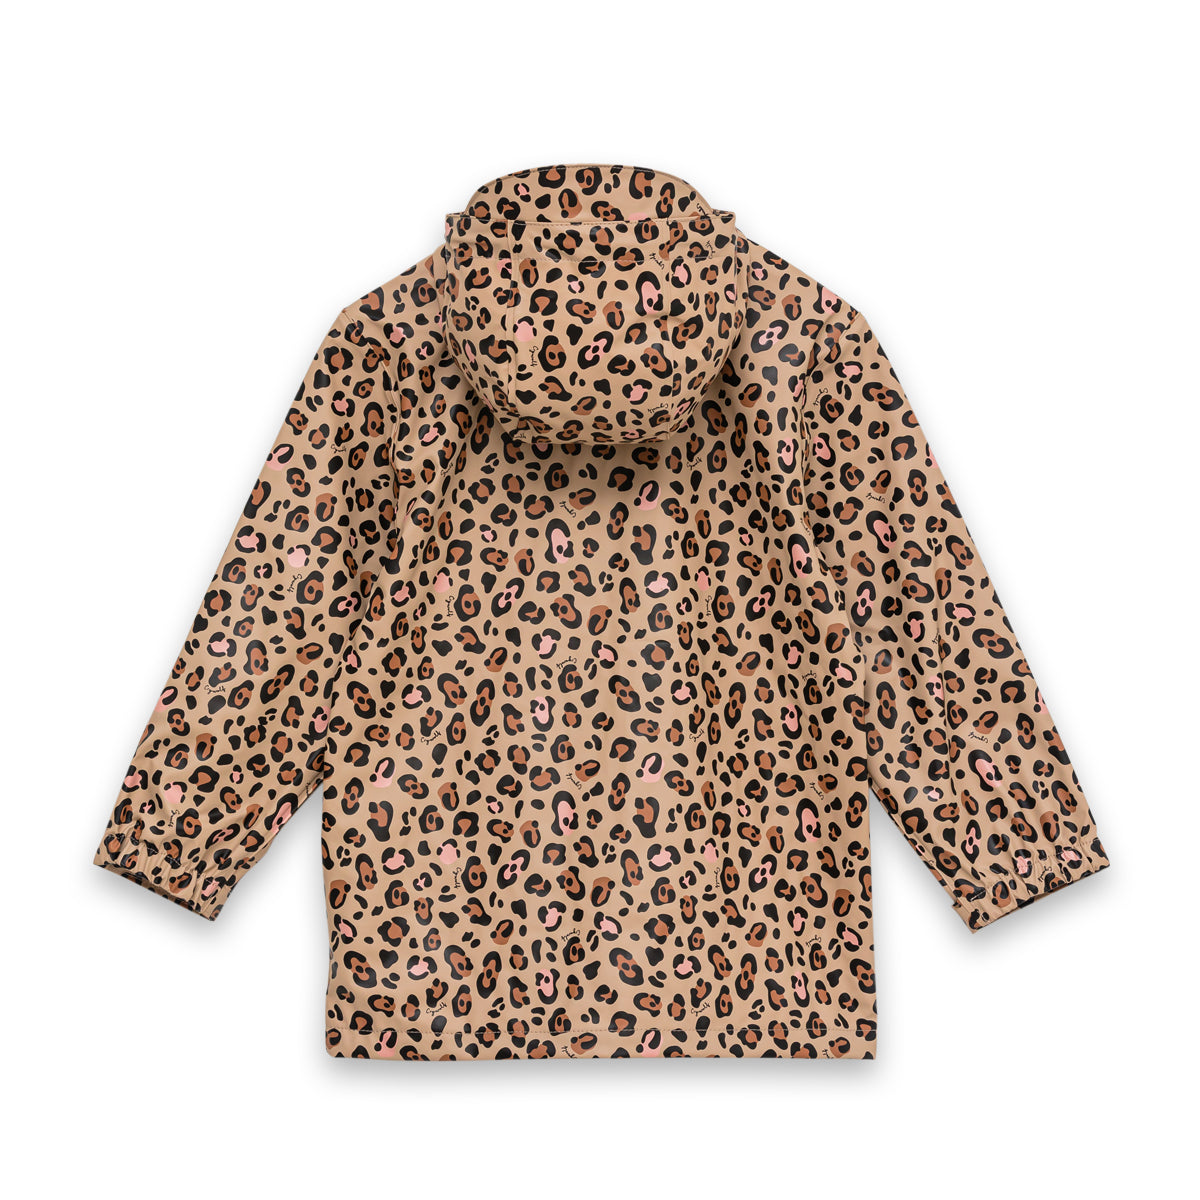 Play jacket -leopard